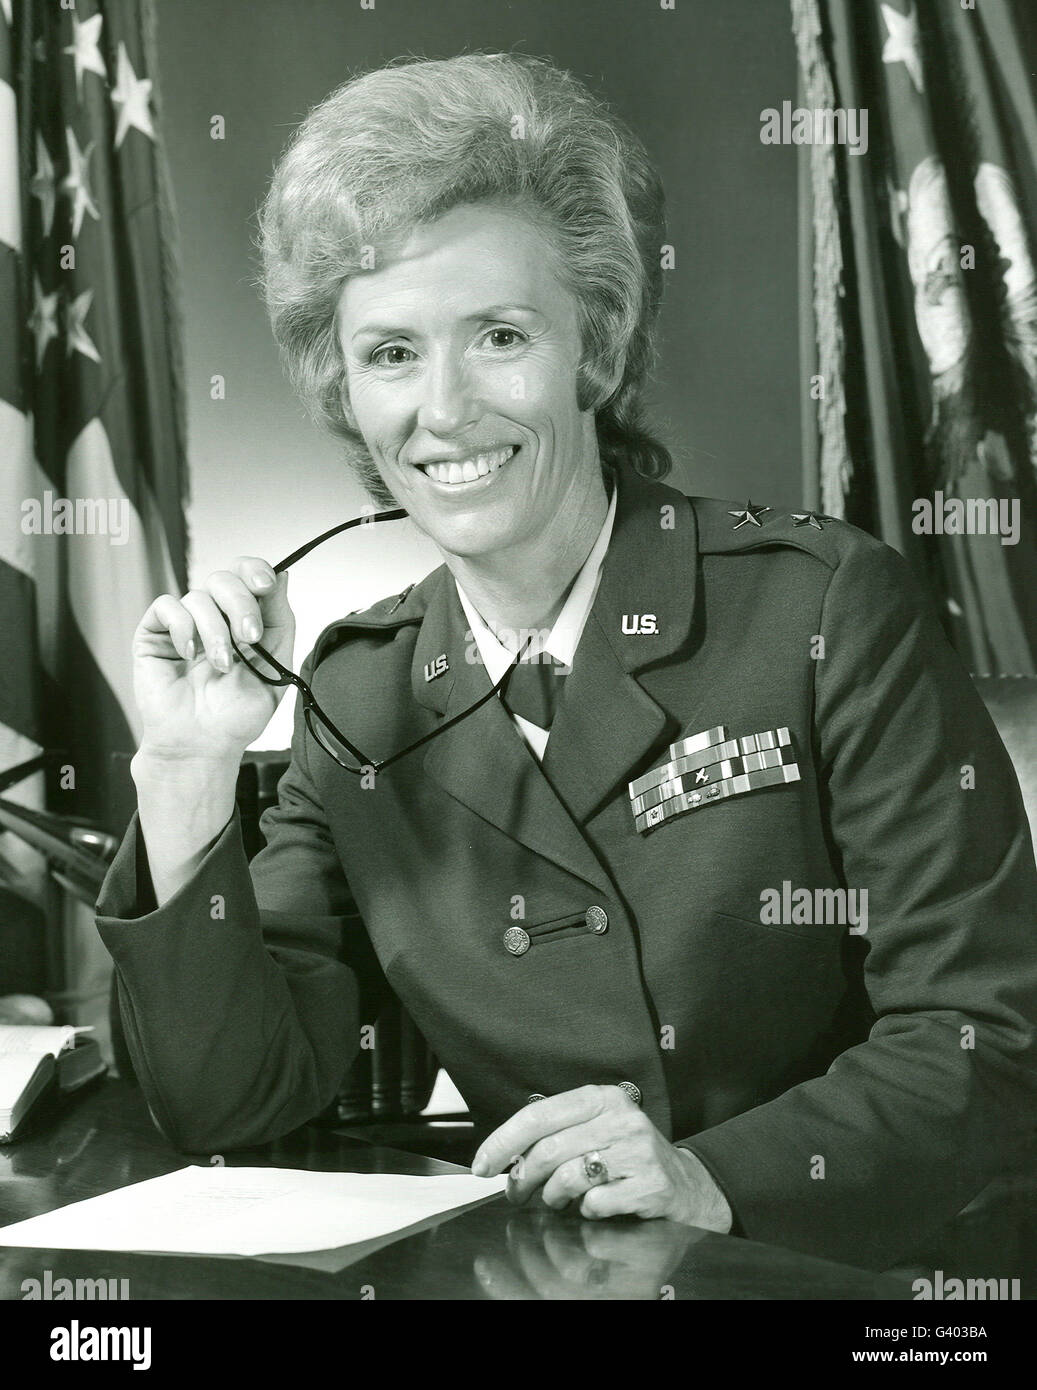 El Mayor General JEANNE M. Holm, la primera mujer general de la Fuerza Aérea de los Estados Unidos. Foto de stock